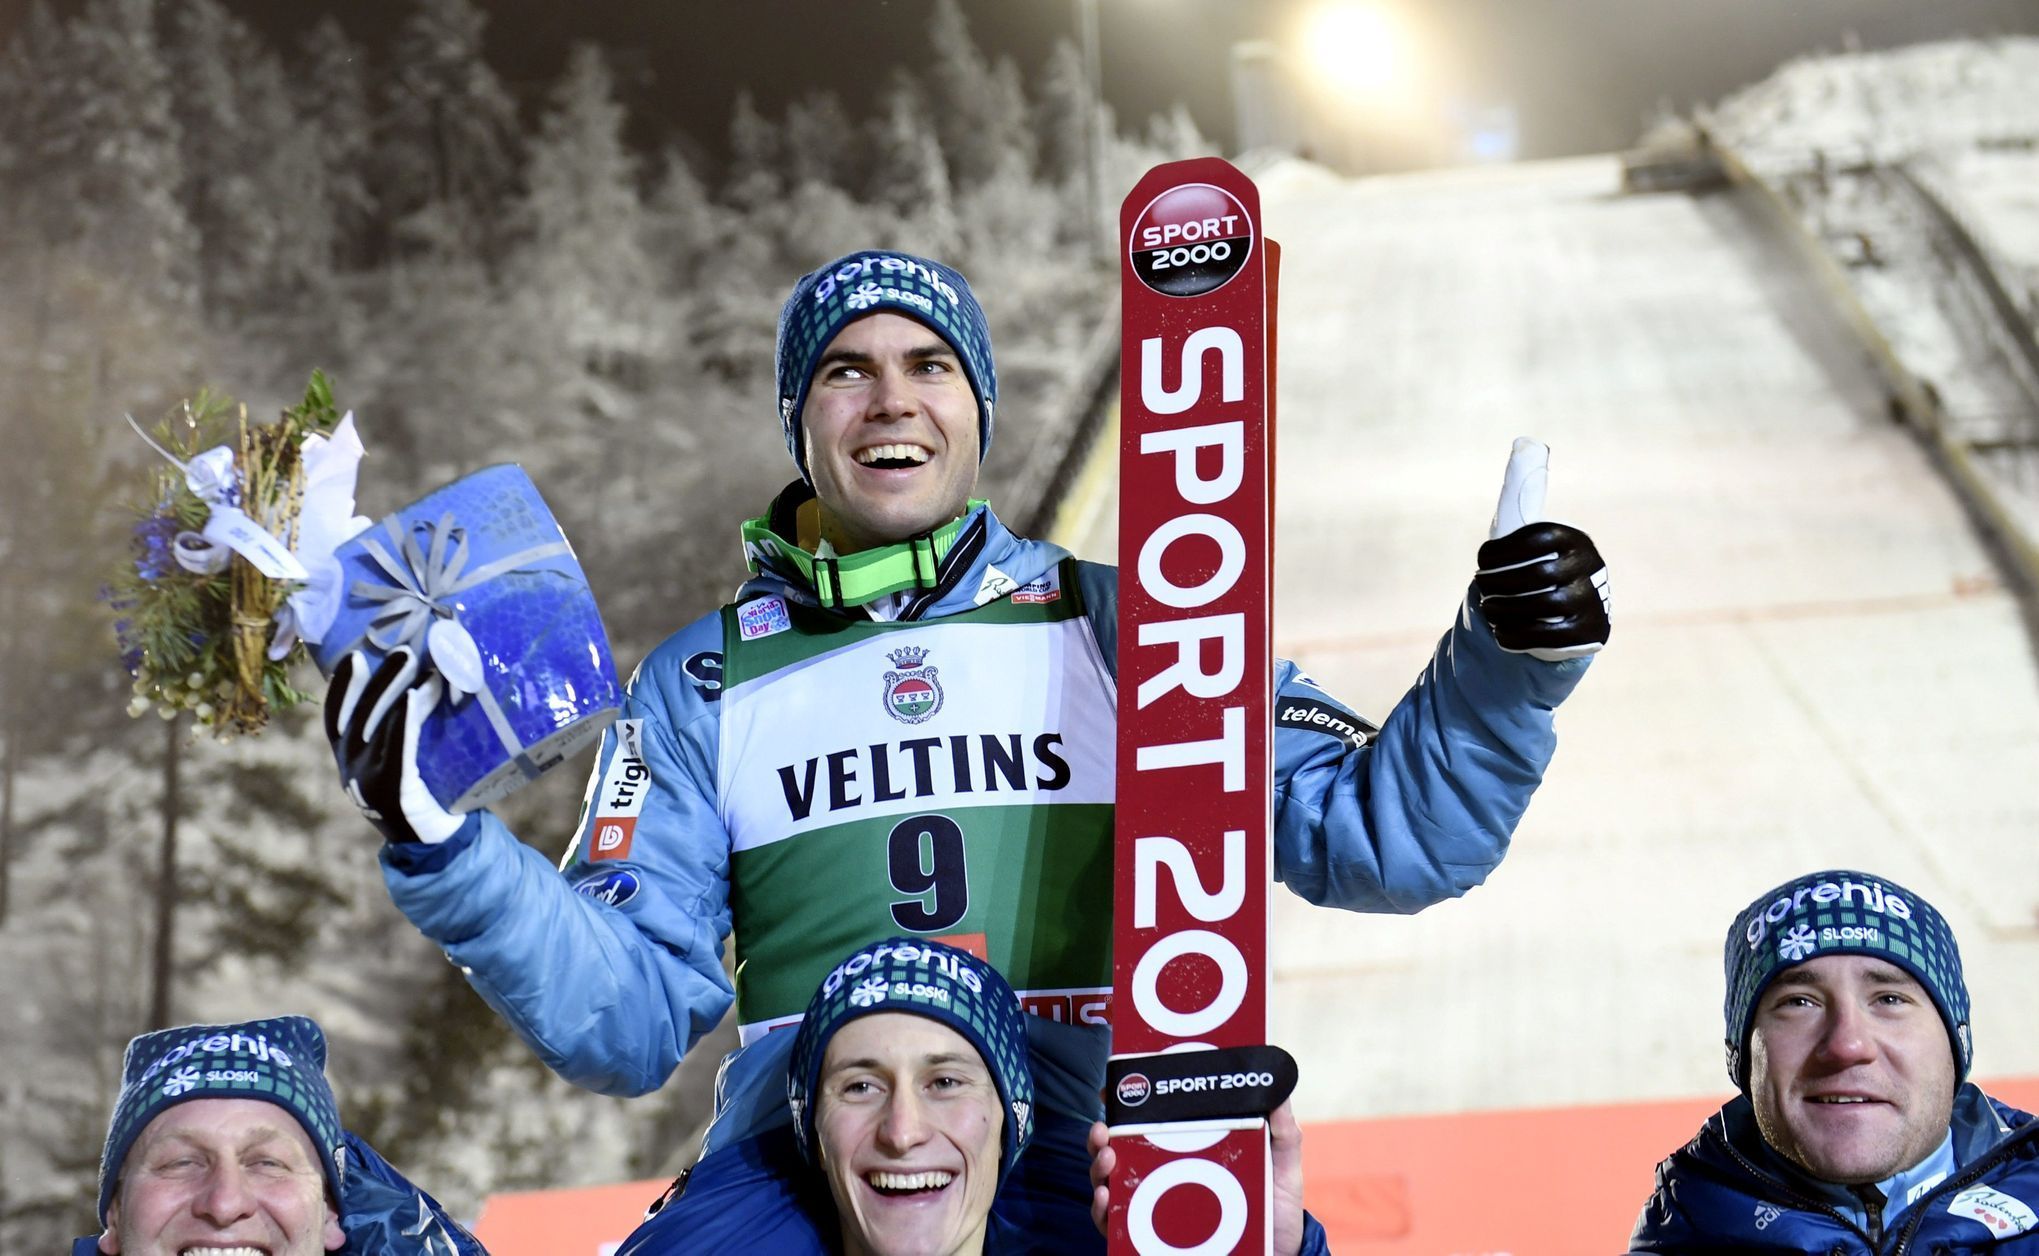 Slovinec Jernej Damjan, vítěz v Kuusamu 2017